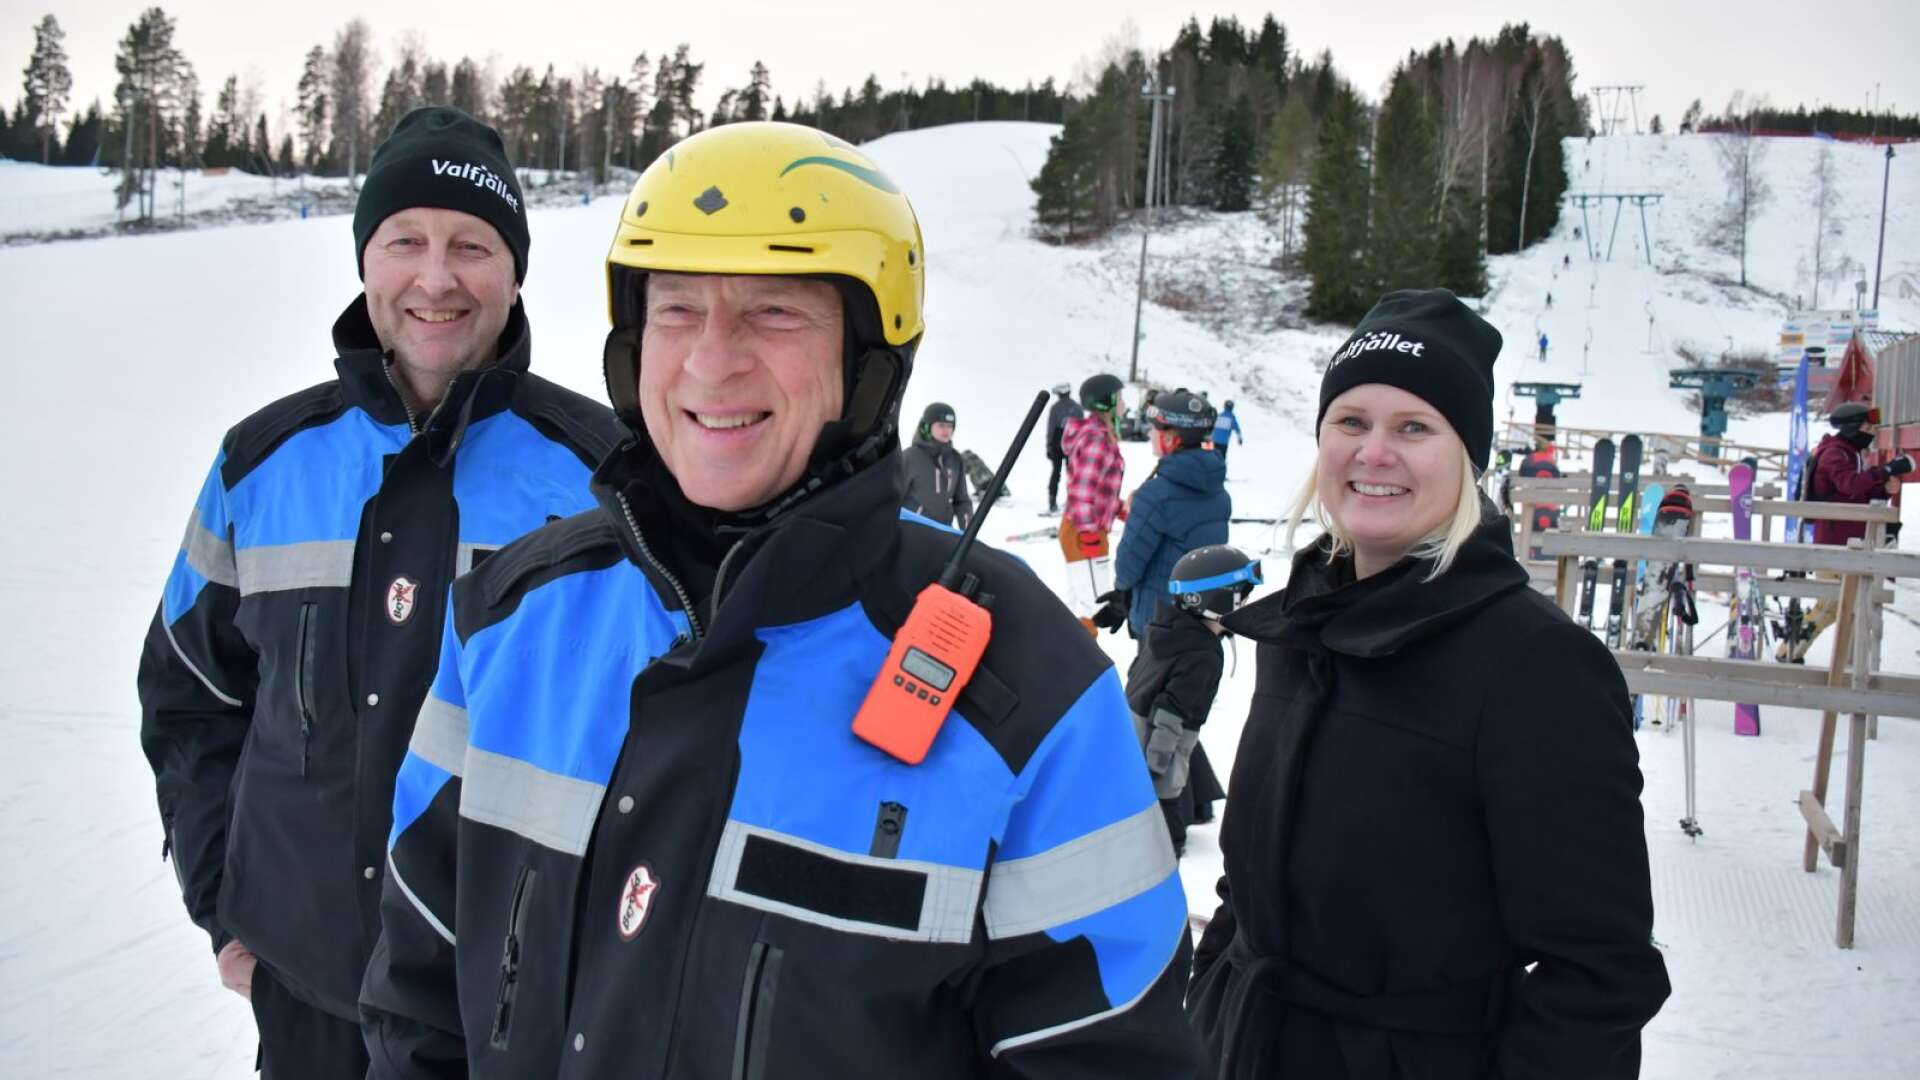 Driftsledaren Torbjörn Malmstedt, pistören Kurt Emtman samt sälj- och marknadsansvariga Mia Olsson konstaterar att det har varit en god tillströmning av besökare i Valfjället hittills den här säsongen.